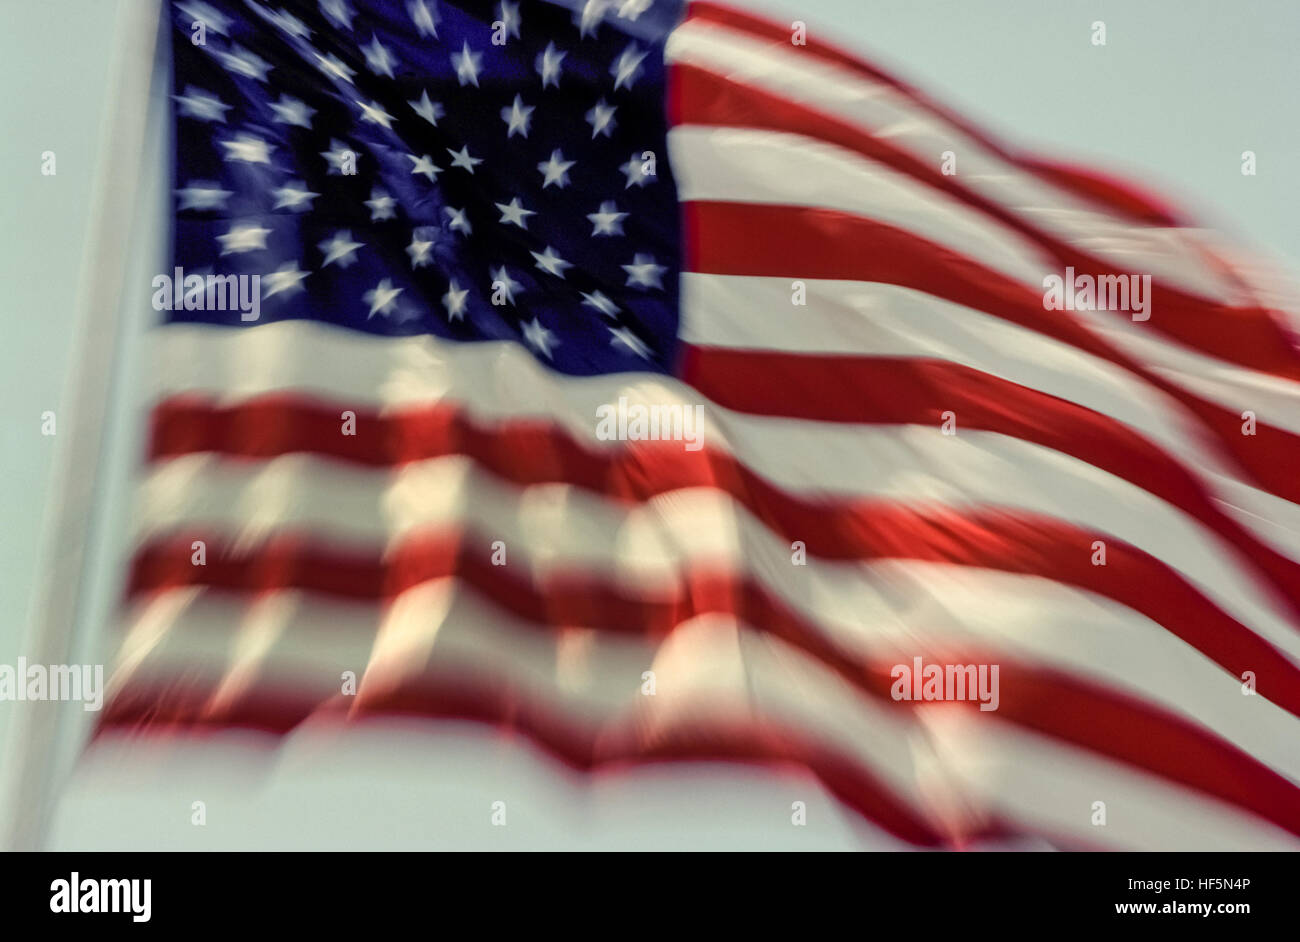 La bandiera nazionale degli Stati Uniti d'America è conosciuta come la bandiera americana, stelle e strisce, vecchia gloria e la Star-Spangled Banner. Il 50 a cinque punte piccole stelle bianche su sfondo blu campo rettangolare rappresentano i 50 stati degli Stati Uniti, mentre il 13 alternando rosso e bianco strisce orizzontali rappresentano le 13 colonie britanniche in America che dichiarò la sua indipendenza dalla Gran Bretagna. Adottato nel 1960, questo è il ventisettesimo versione della bandiera americana che in primo luogo è stato progettato nel 1777. È qui mostrato sventolare nel vento. Foto Stock